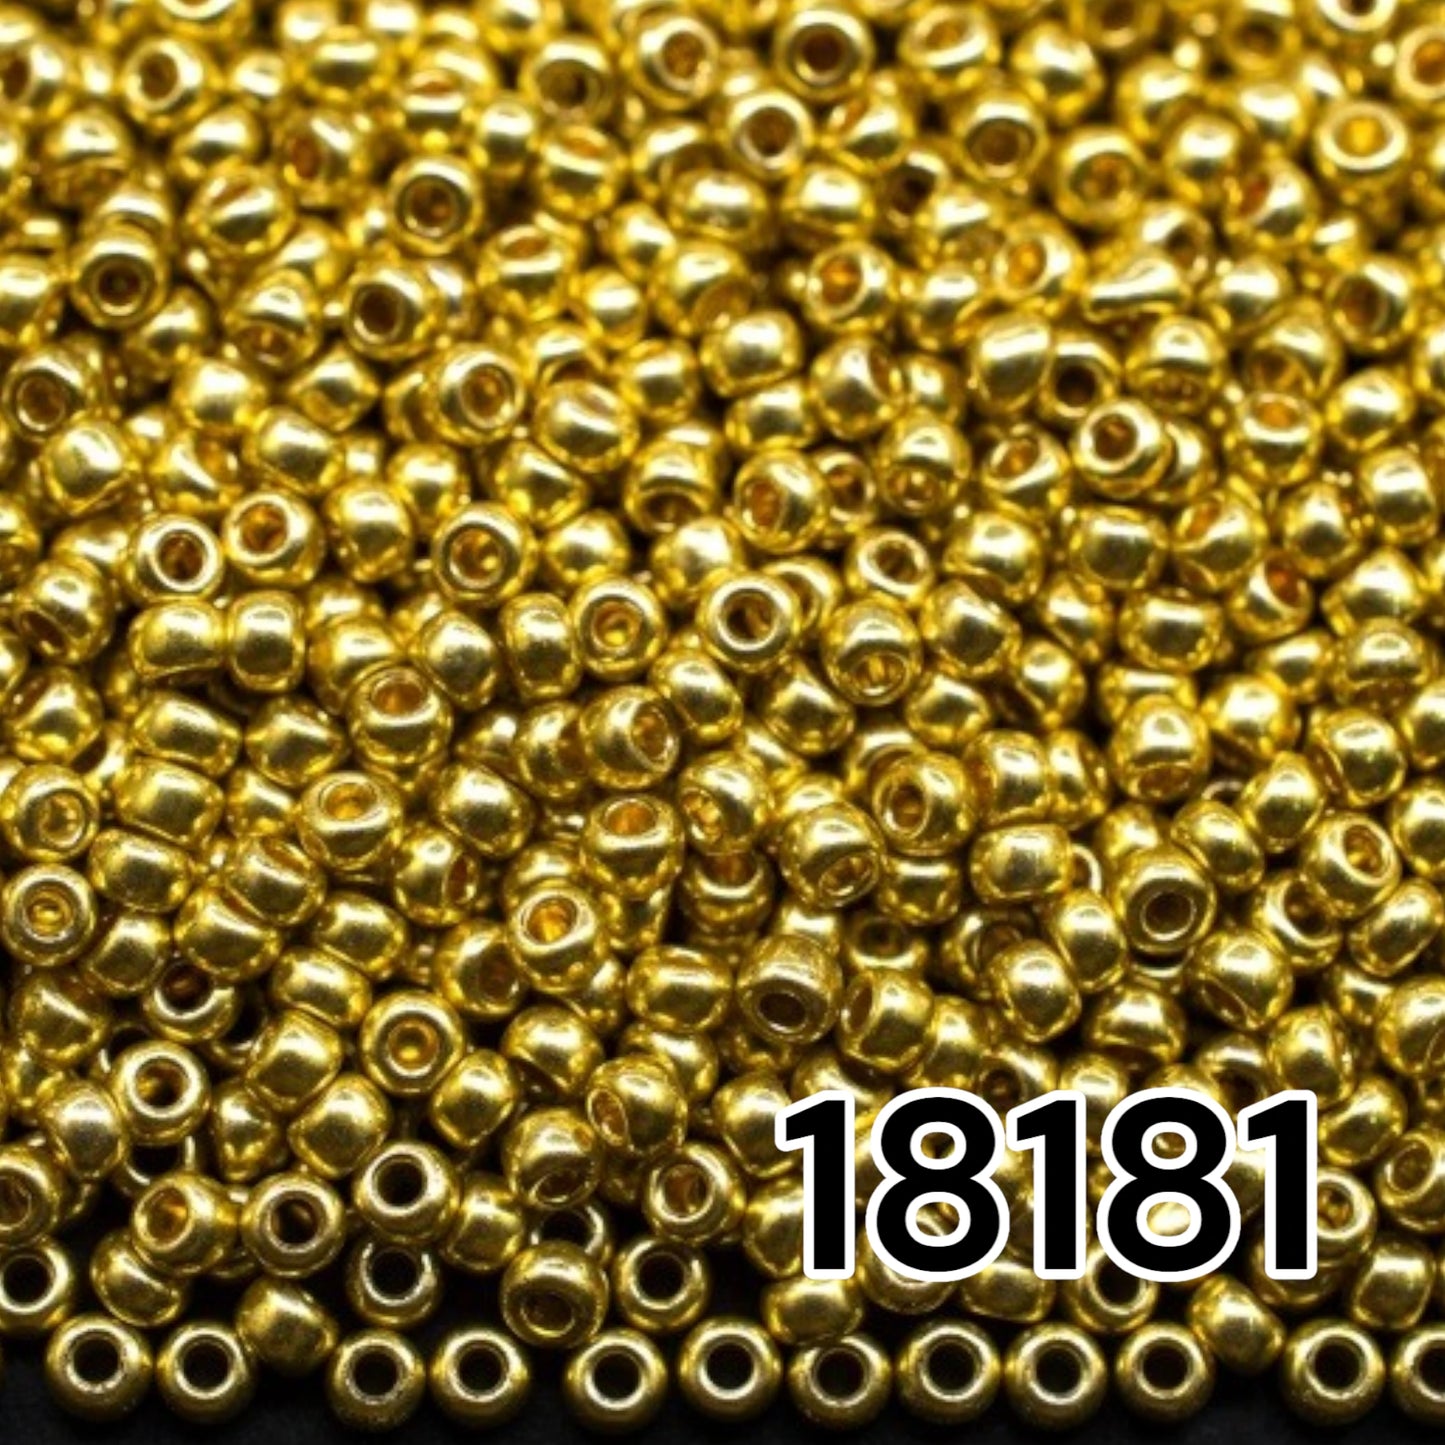 18181 Tschechische Rocailles PRECIOSA rund 10/0 Goldmetallic. Metallisch - Solgel.